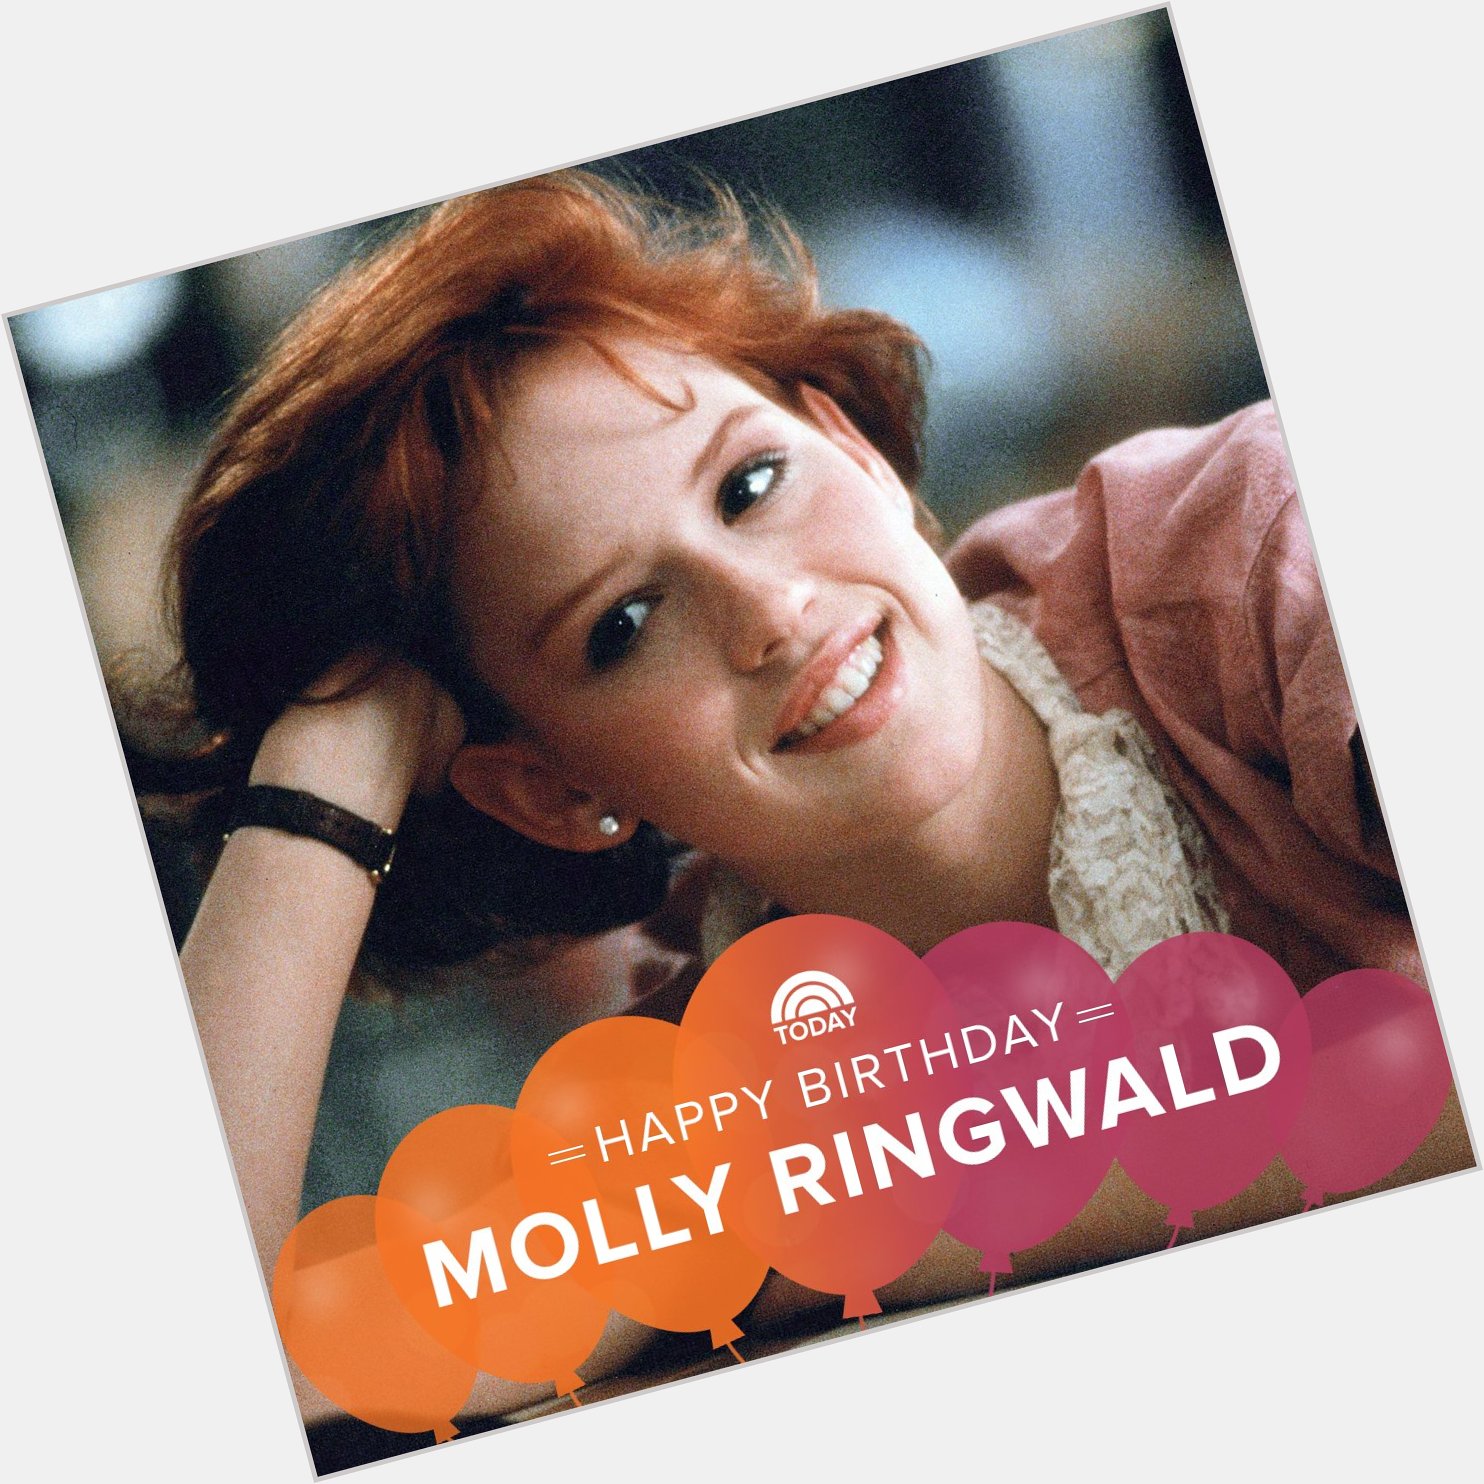 Happy 50th birthday, Molly Ringwald!  